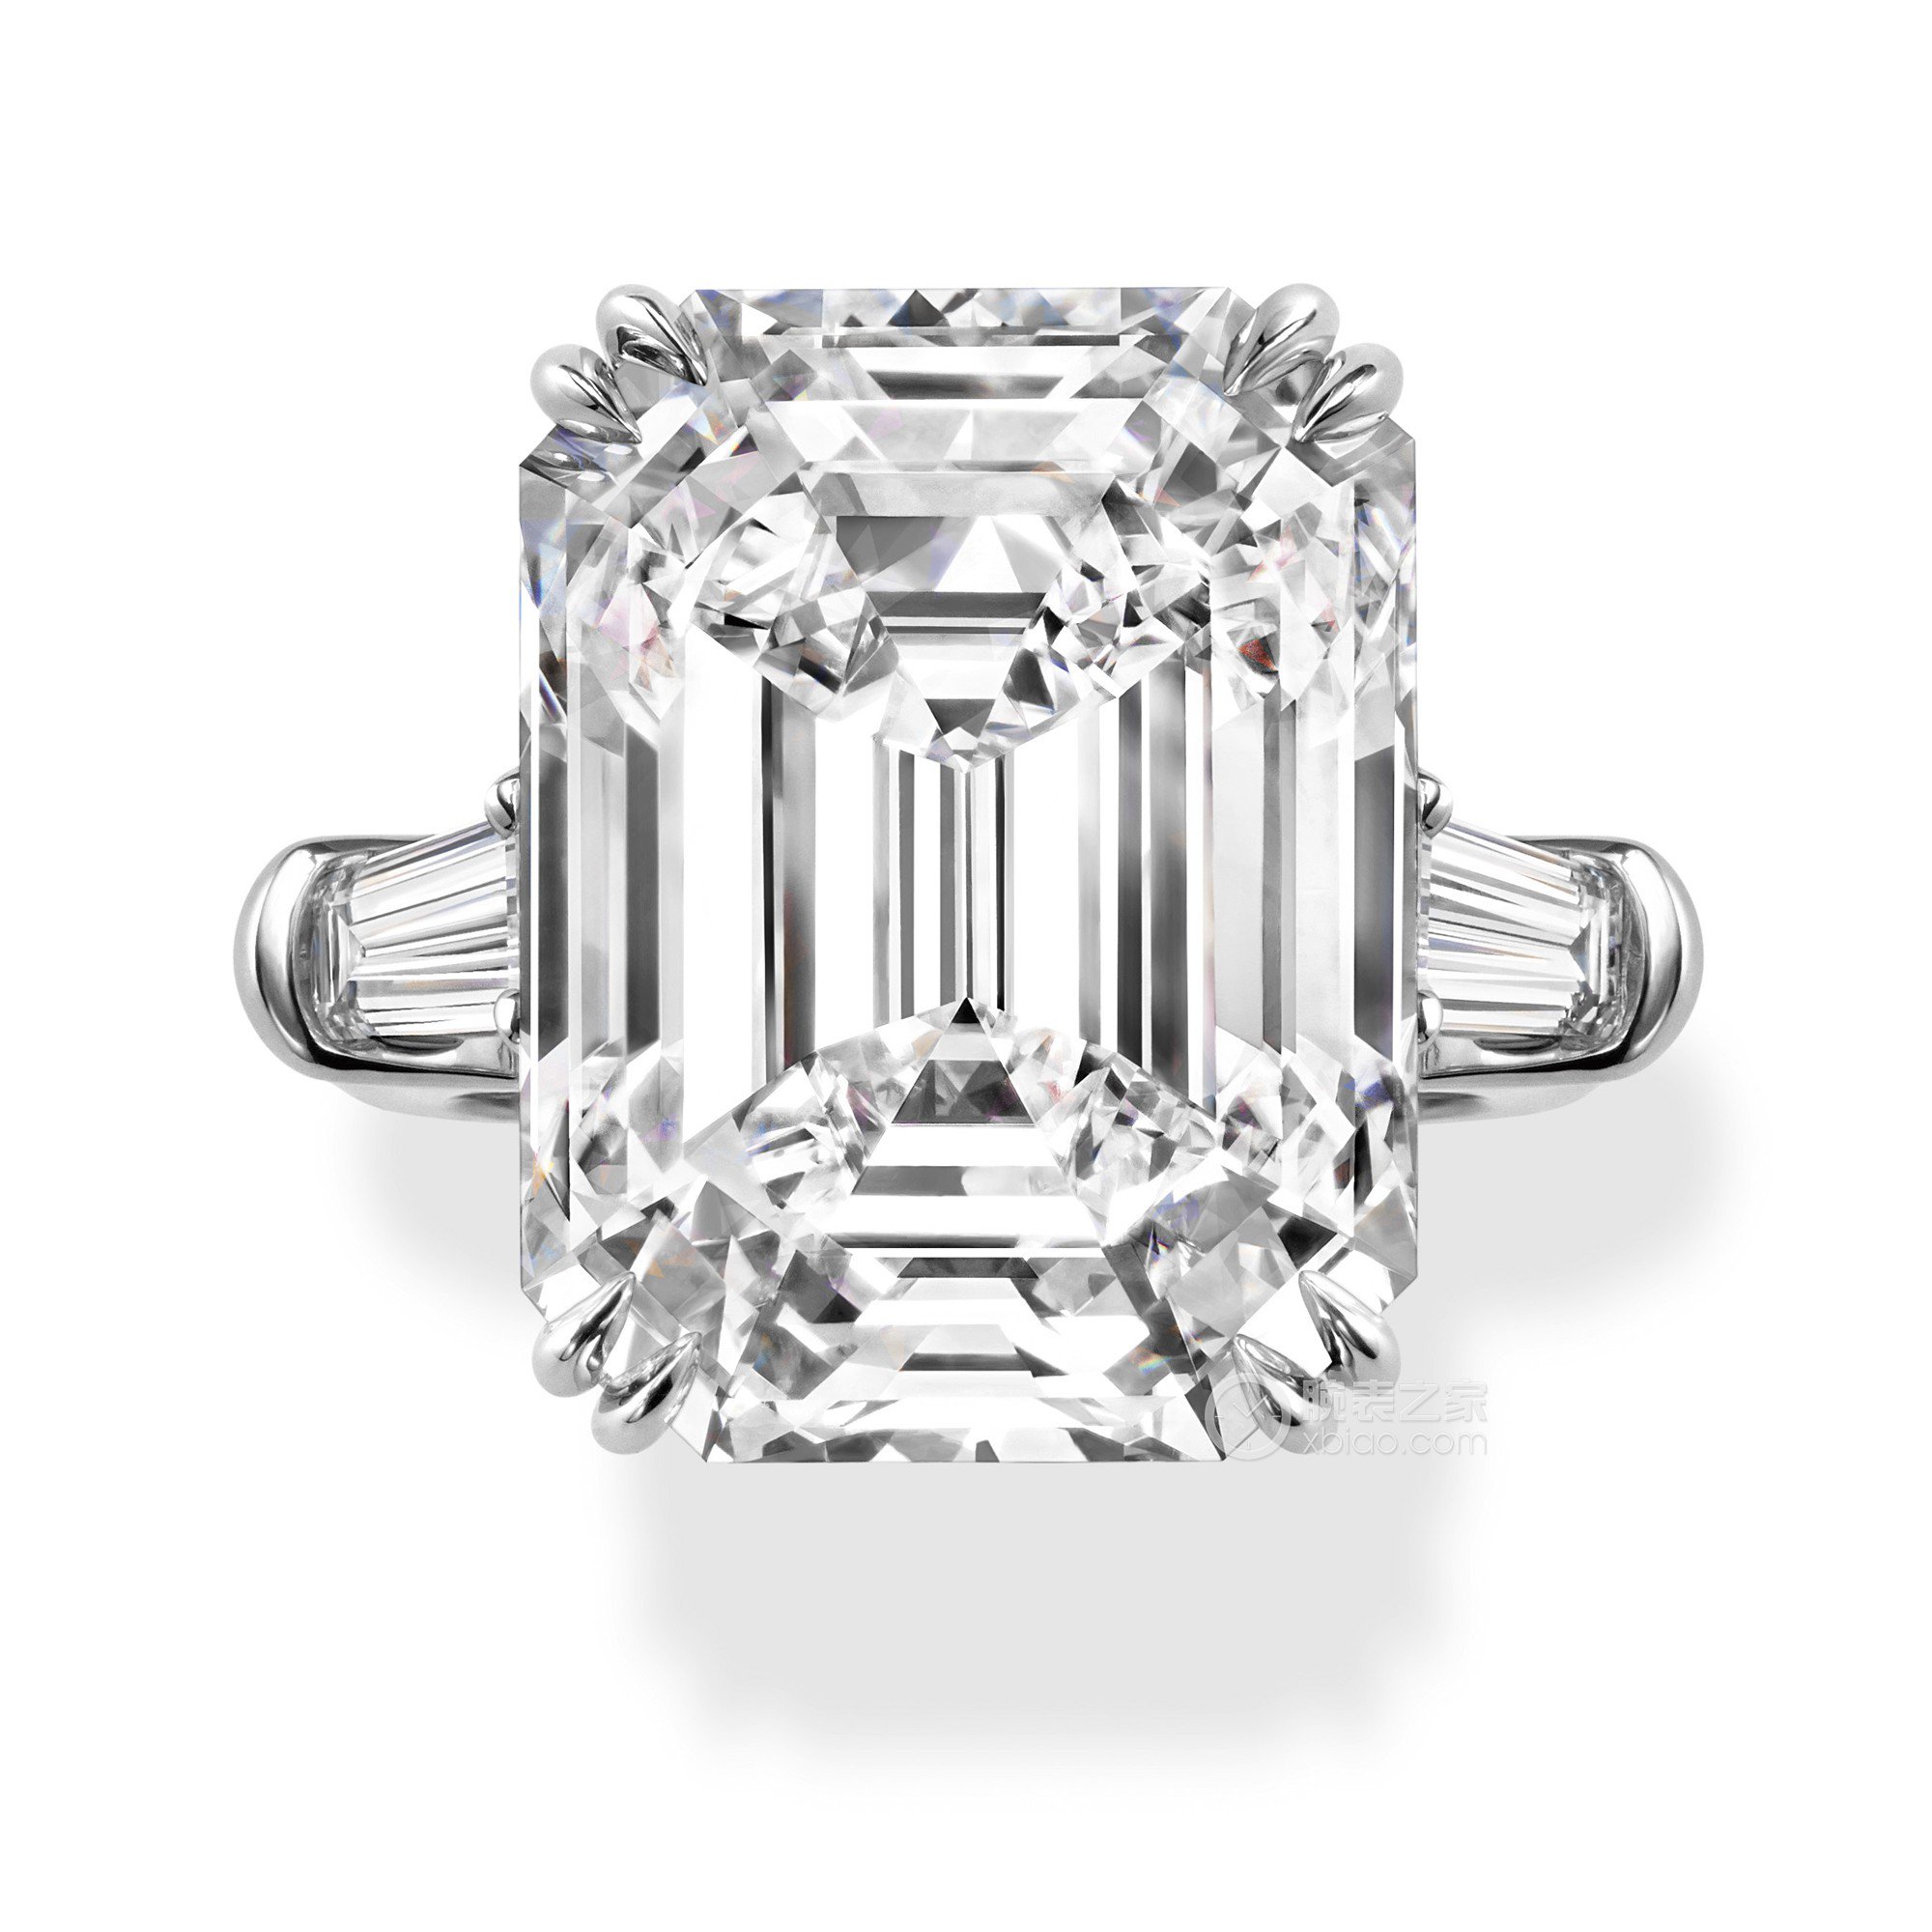 海瑞温斯顿CLASSIC WINSTON系列Classic Winston系列祖母绿型切工钻石搭配长锥形切工边钻订婚戒指戒指